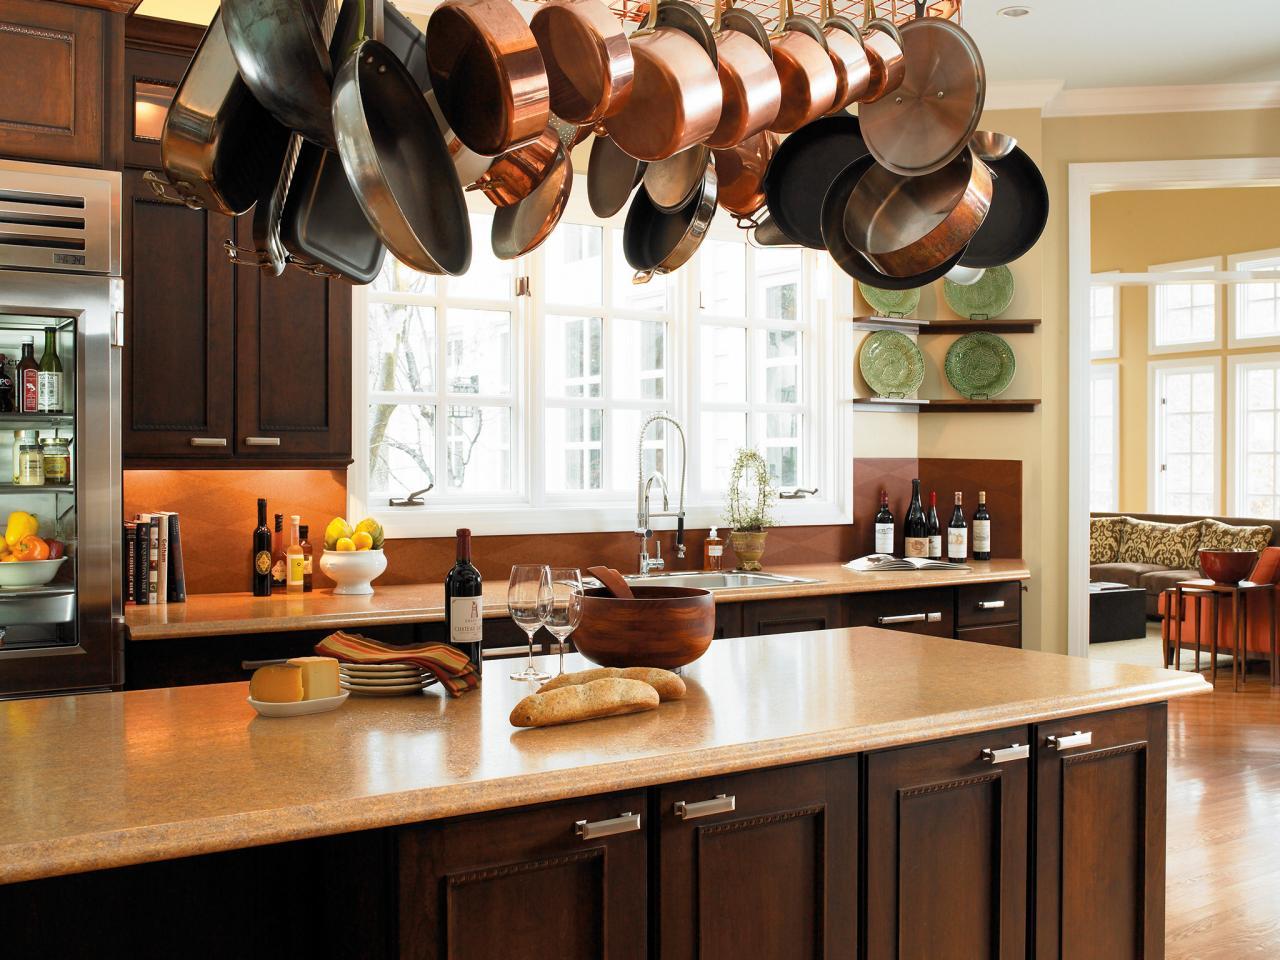 Tủ bếp Laminate kết hợp phụ kiện nhà bếp mang đến không gian nội thất hiện đại và tiện dụng nhất